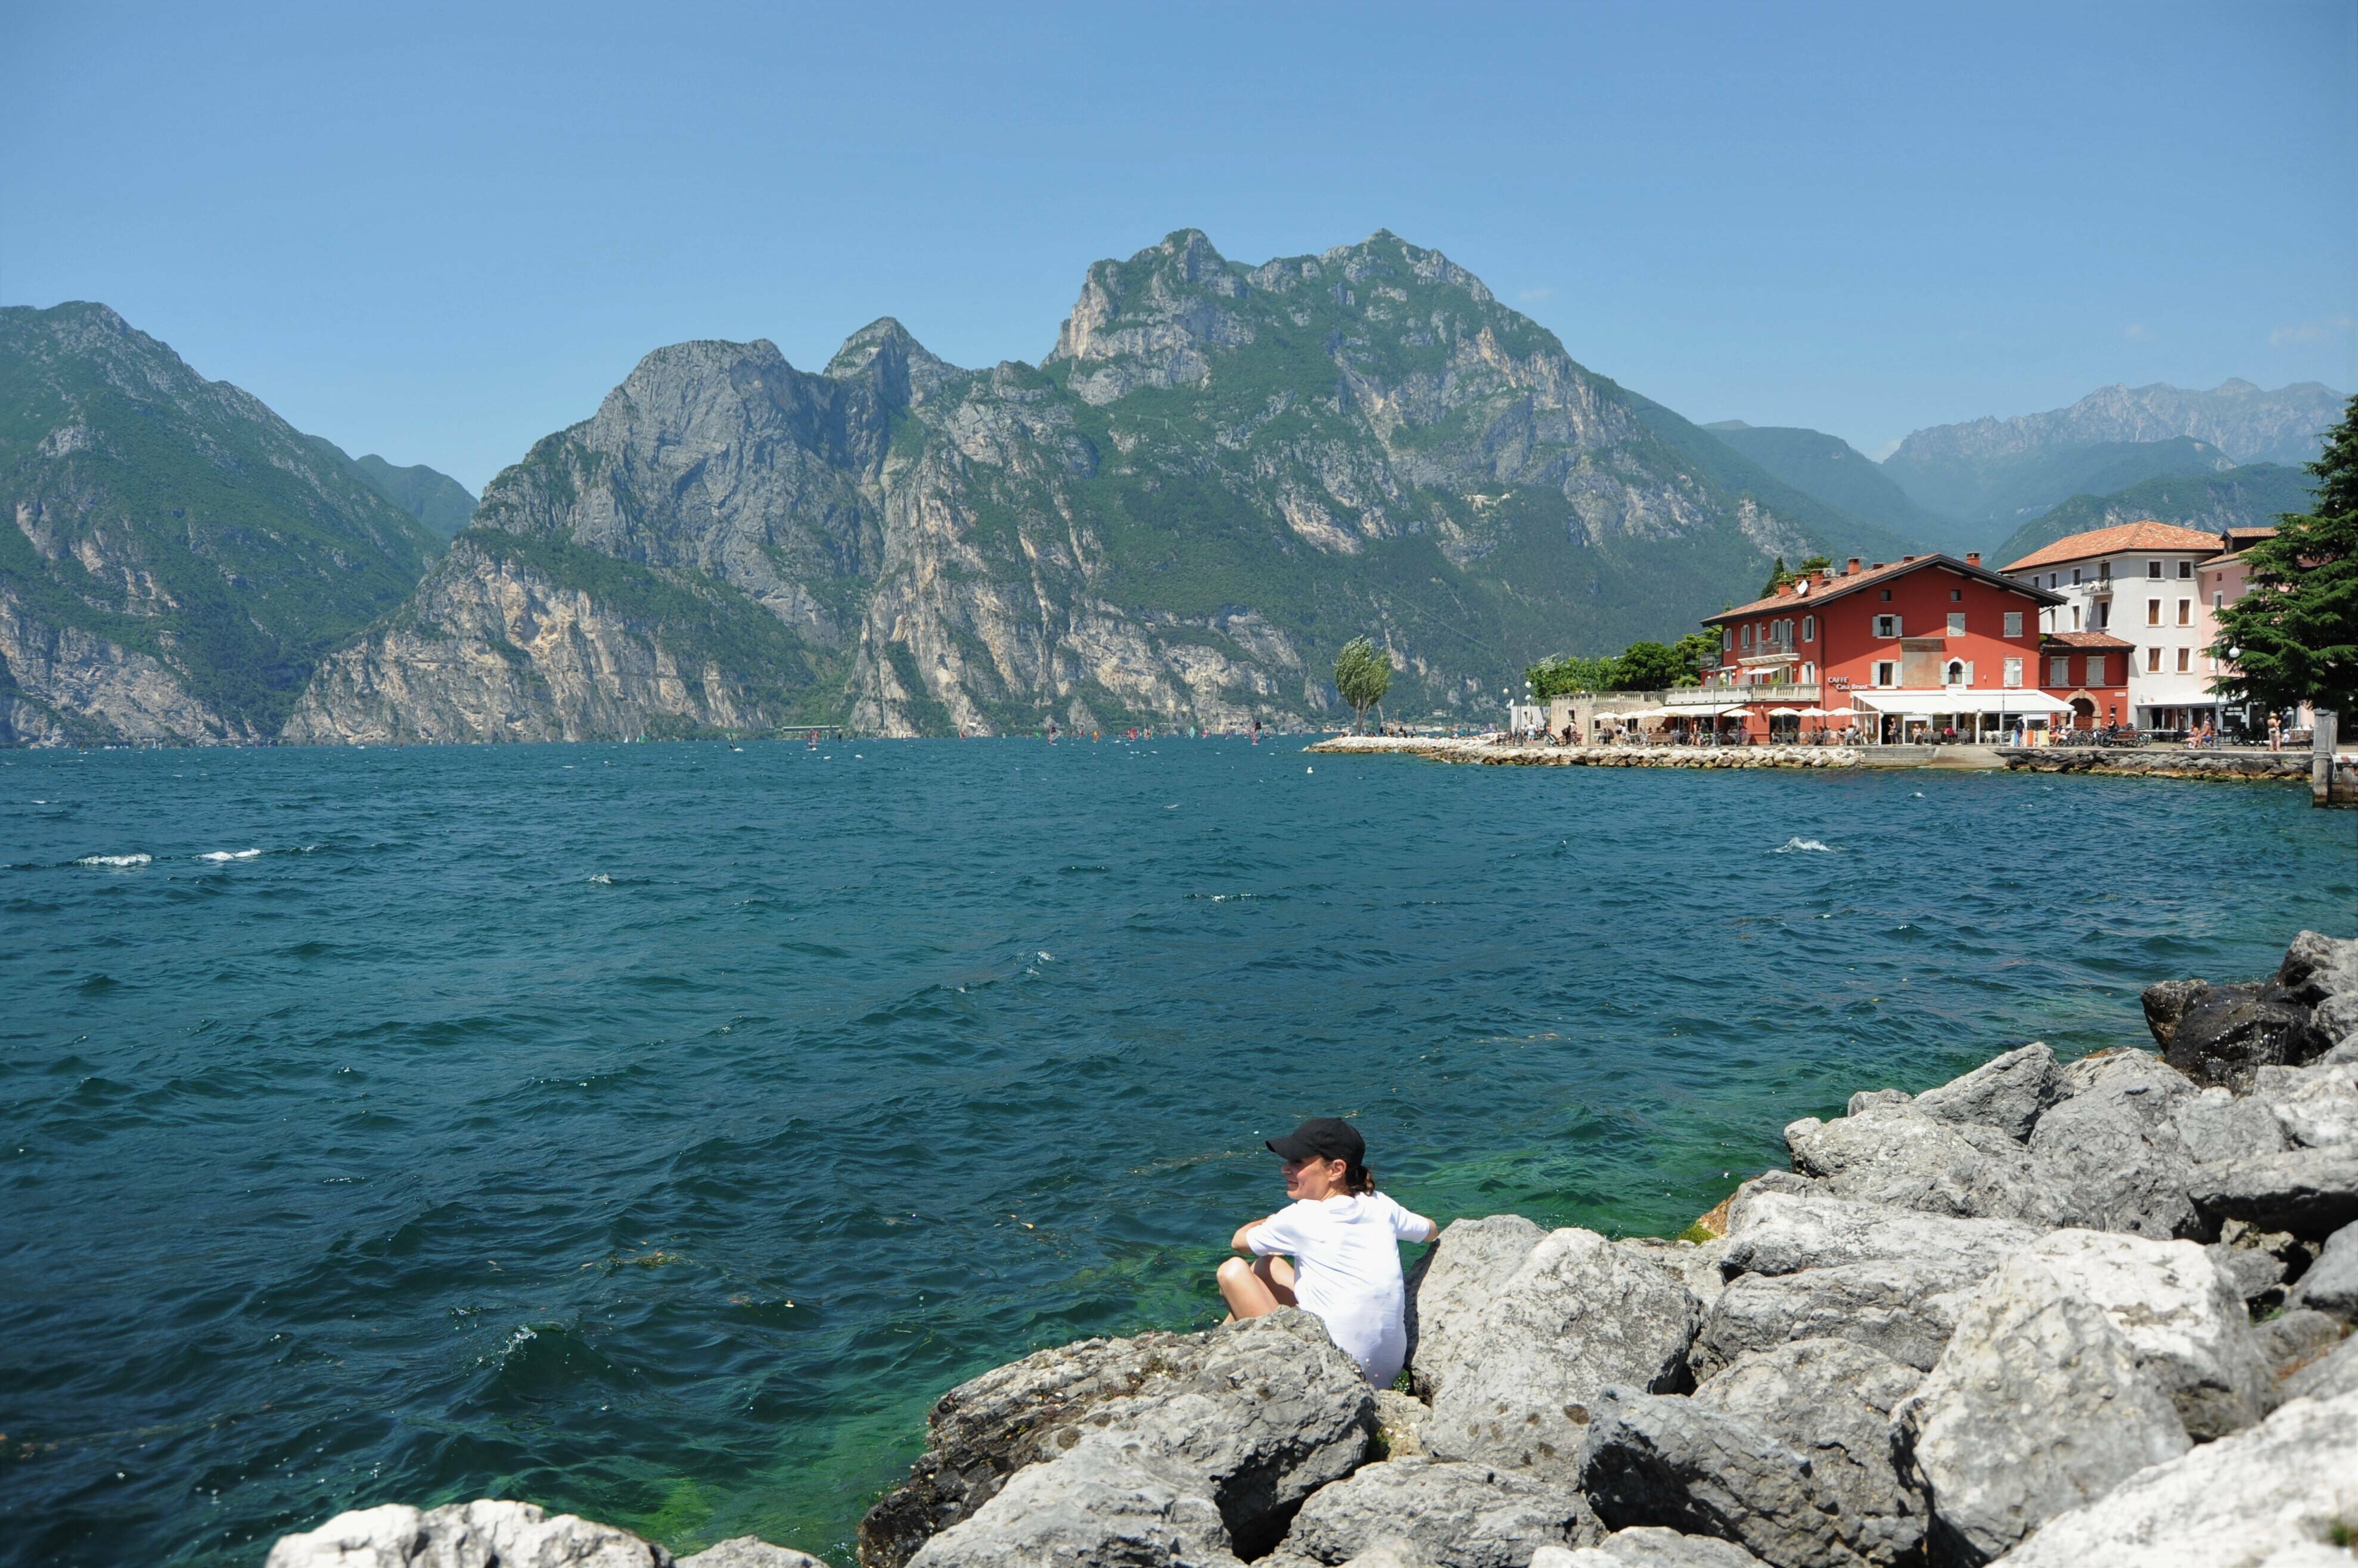 Nivelul de apă foarte scăzut al lacului Garda, Italia, șochează turiștii. „Apa nu mai era acolo” | GALERIE FOTO - Imaginea 9